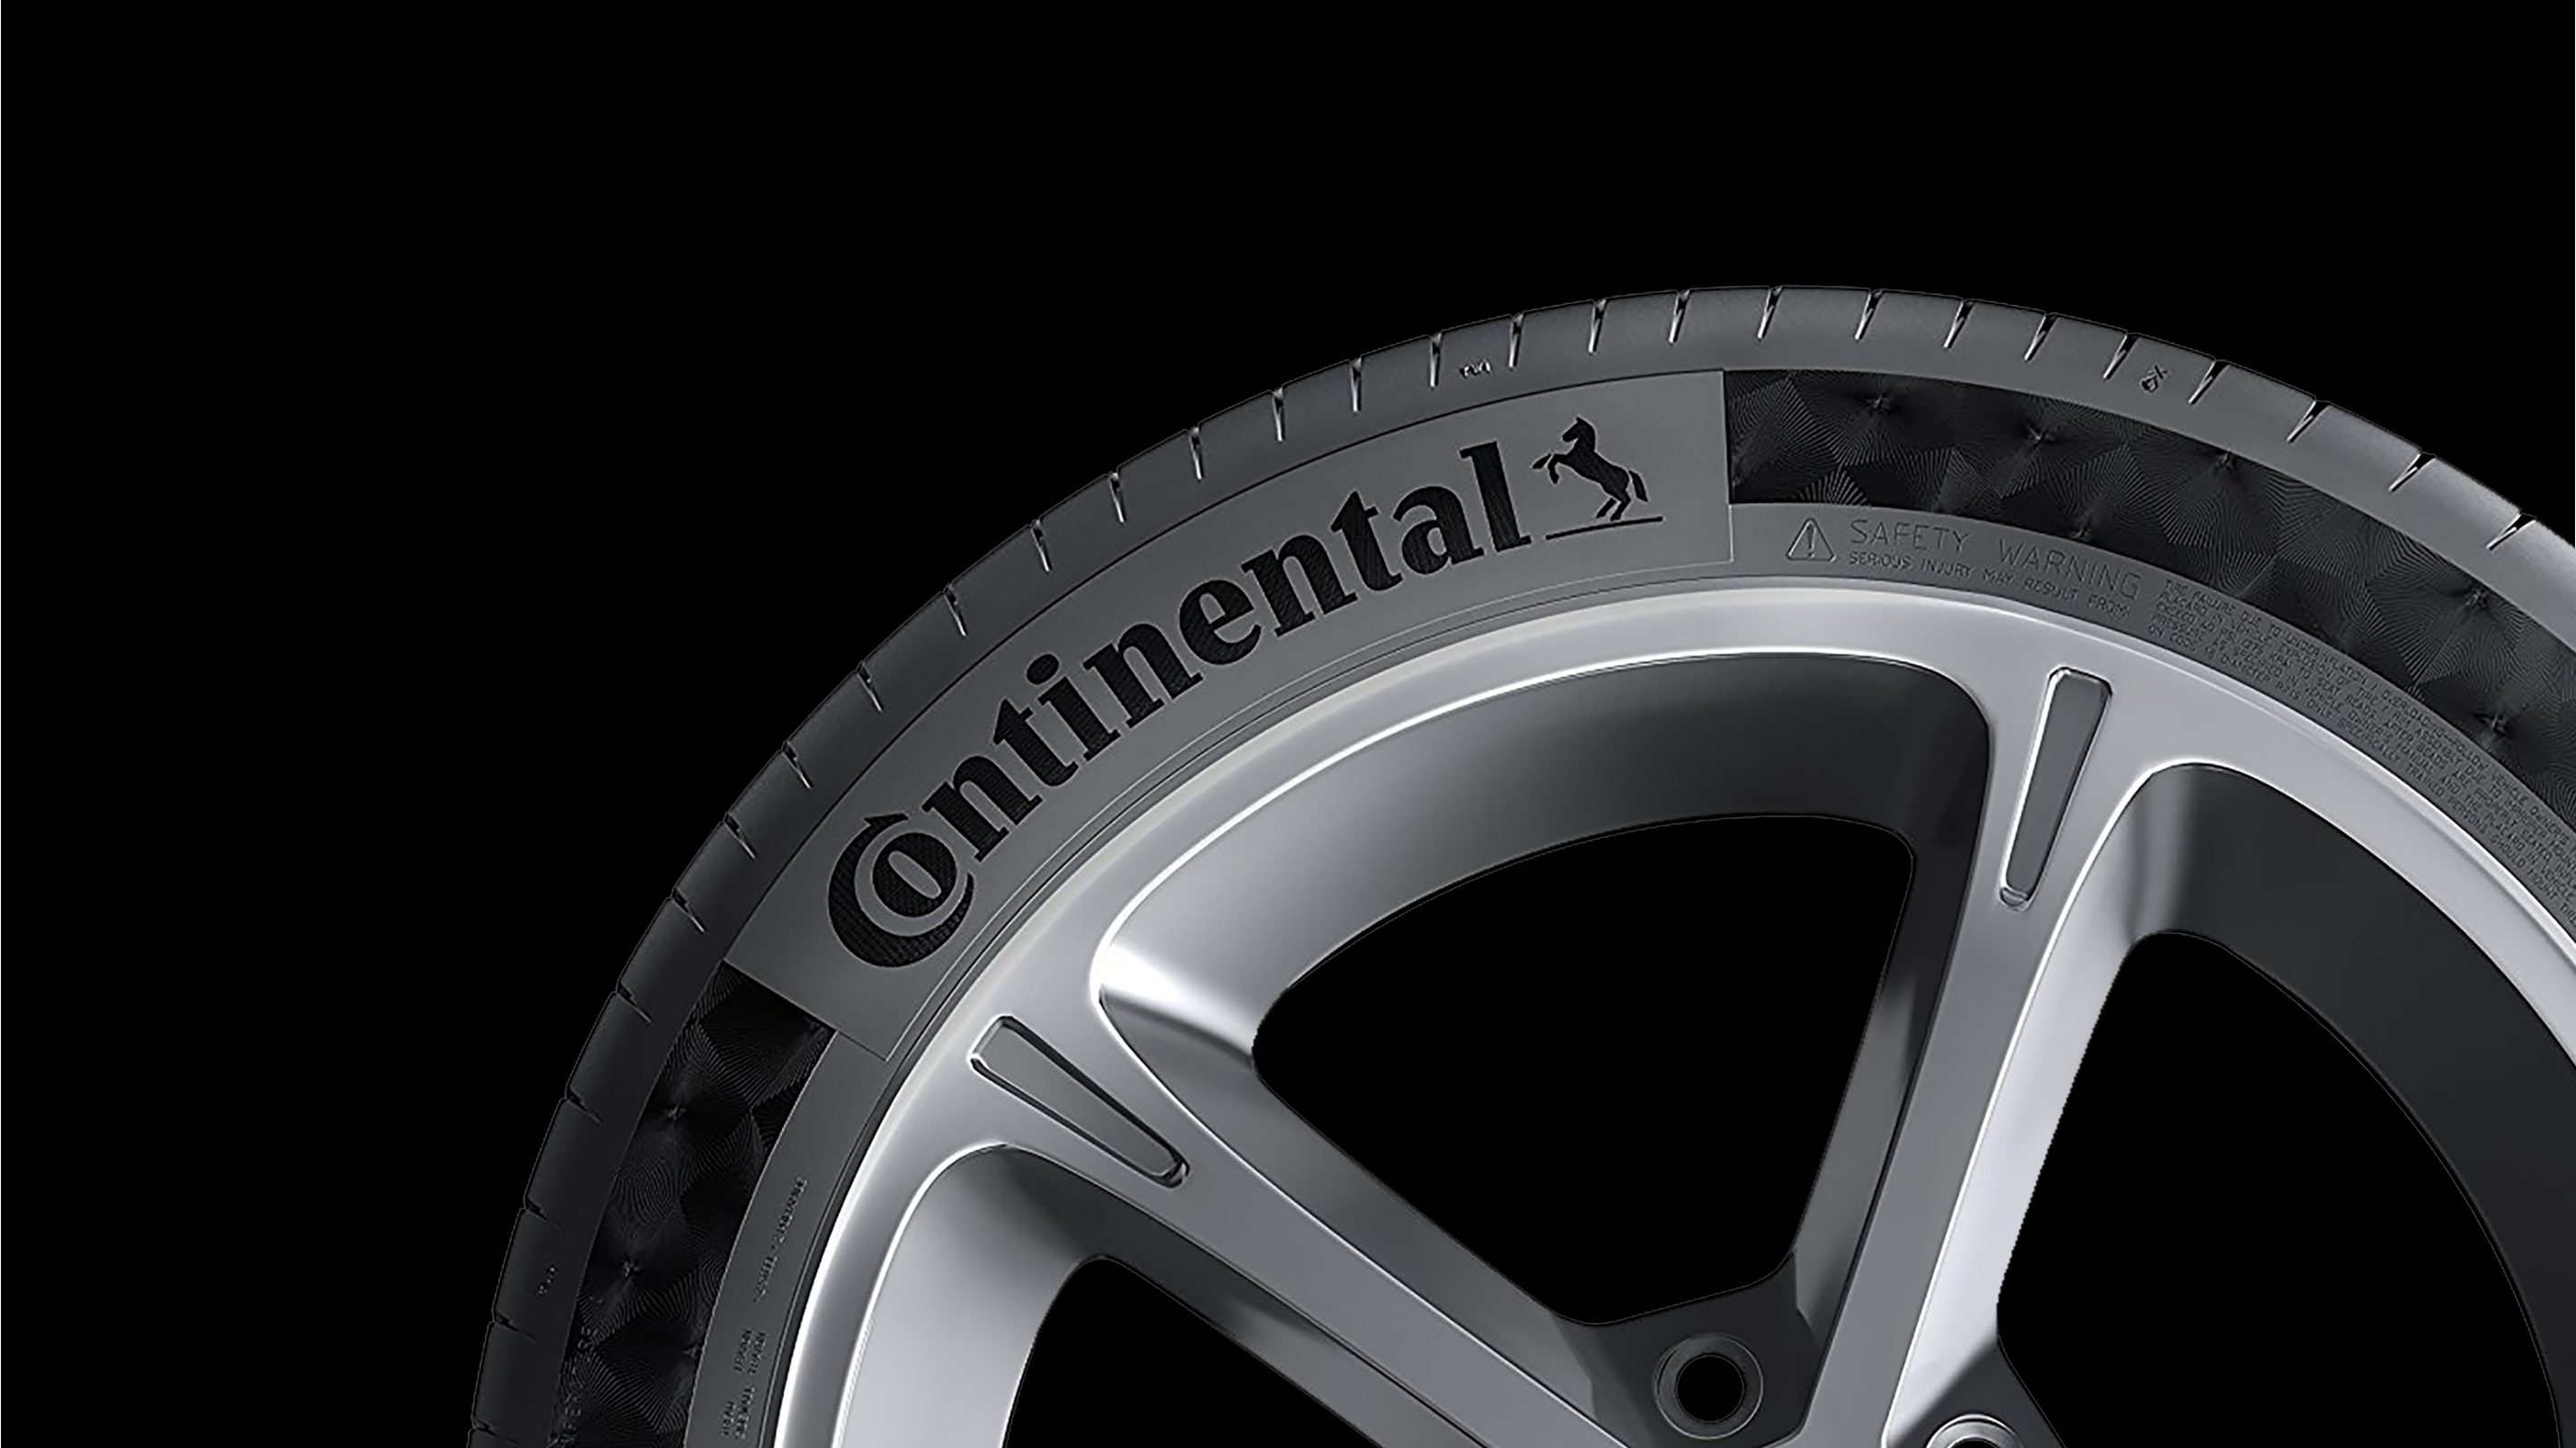 Continental Rebranding – Poarangan Brand Design3